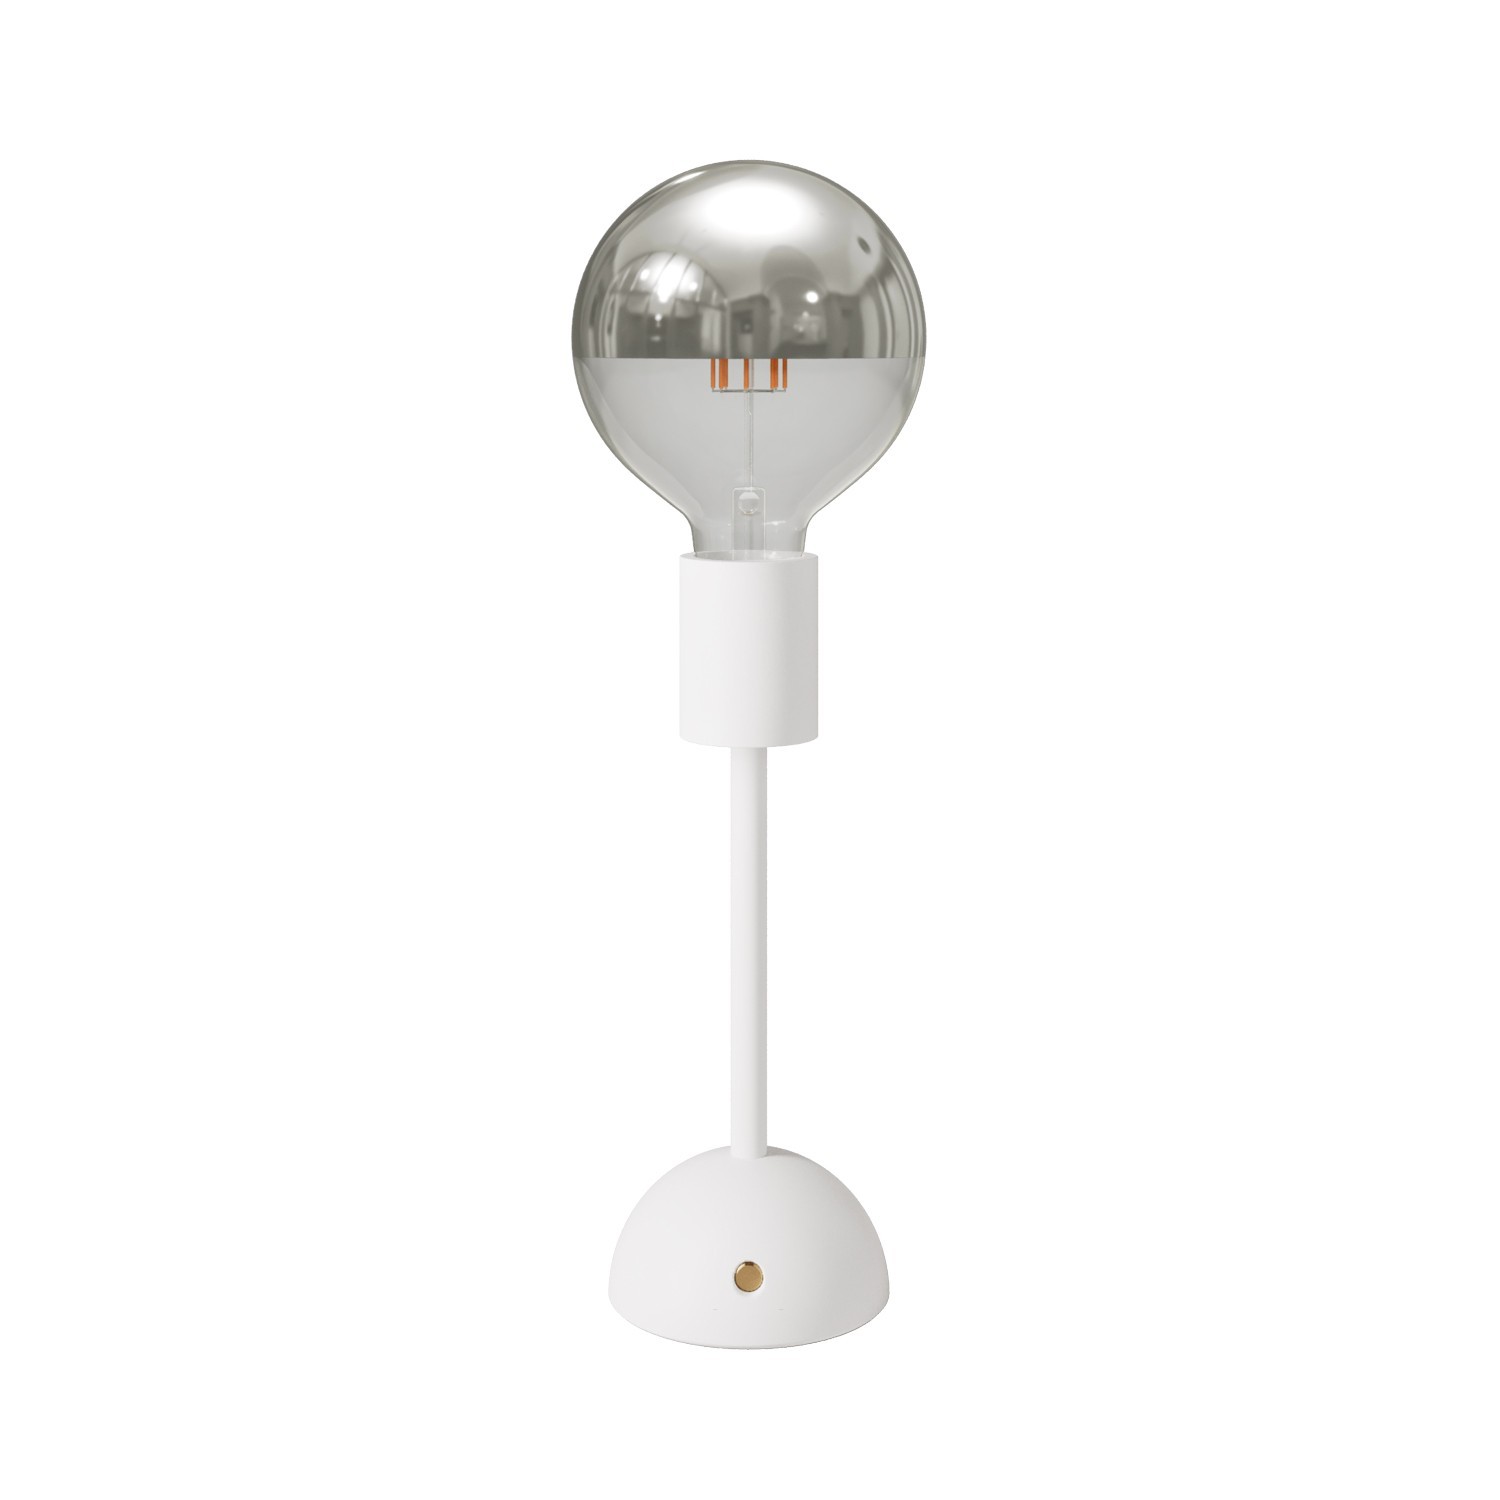 Prijenosna i punjiva svjetiljka Cabless02 sa srebrnom polusfernom žaruljom